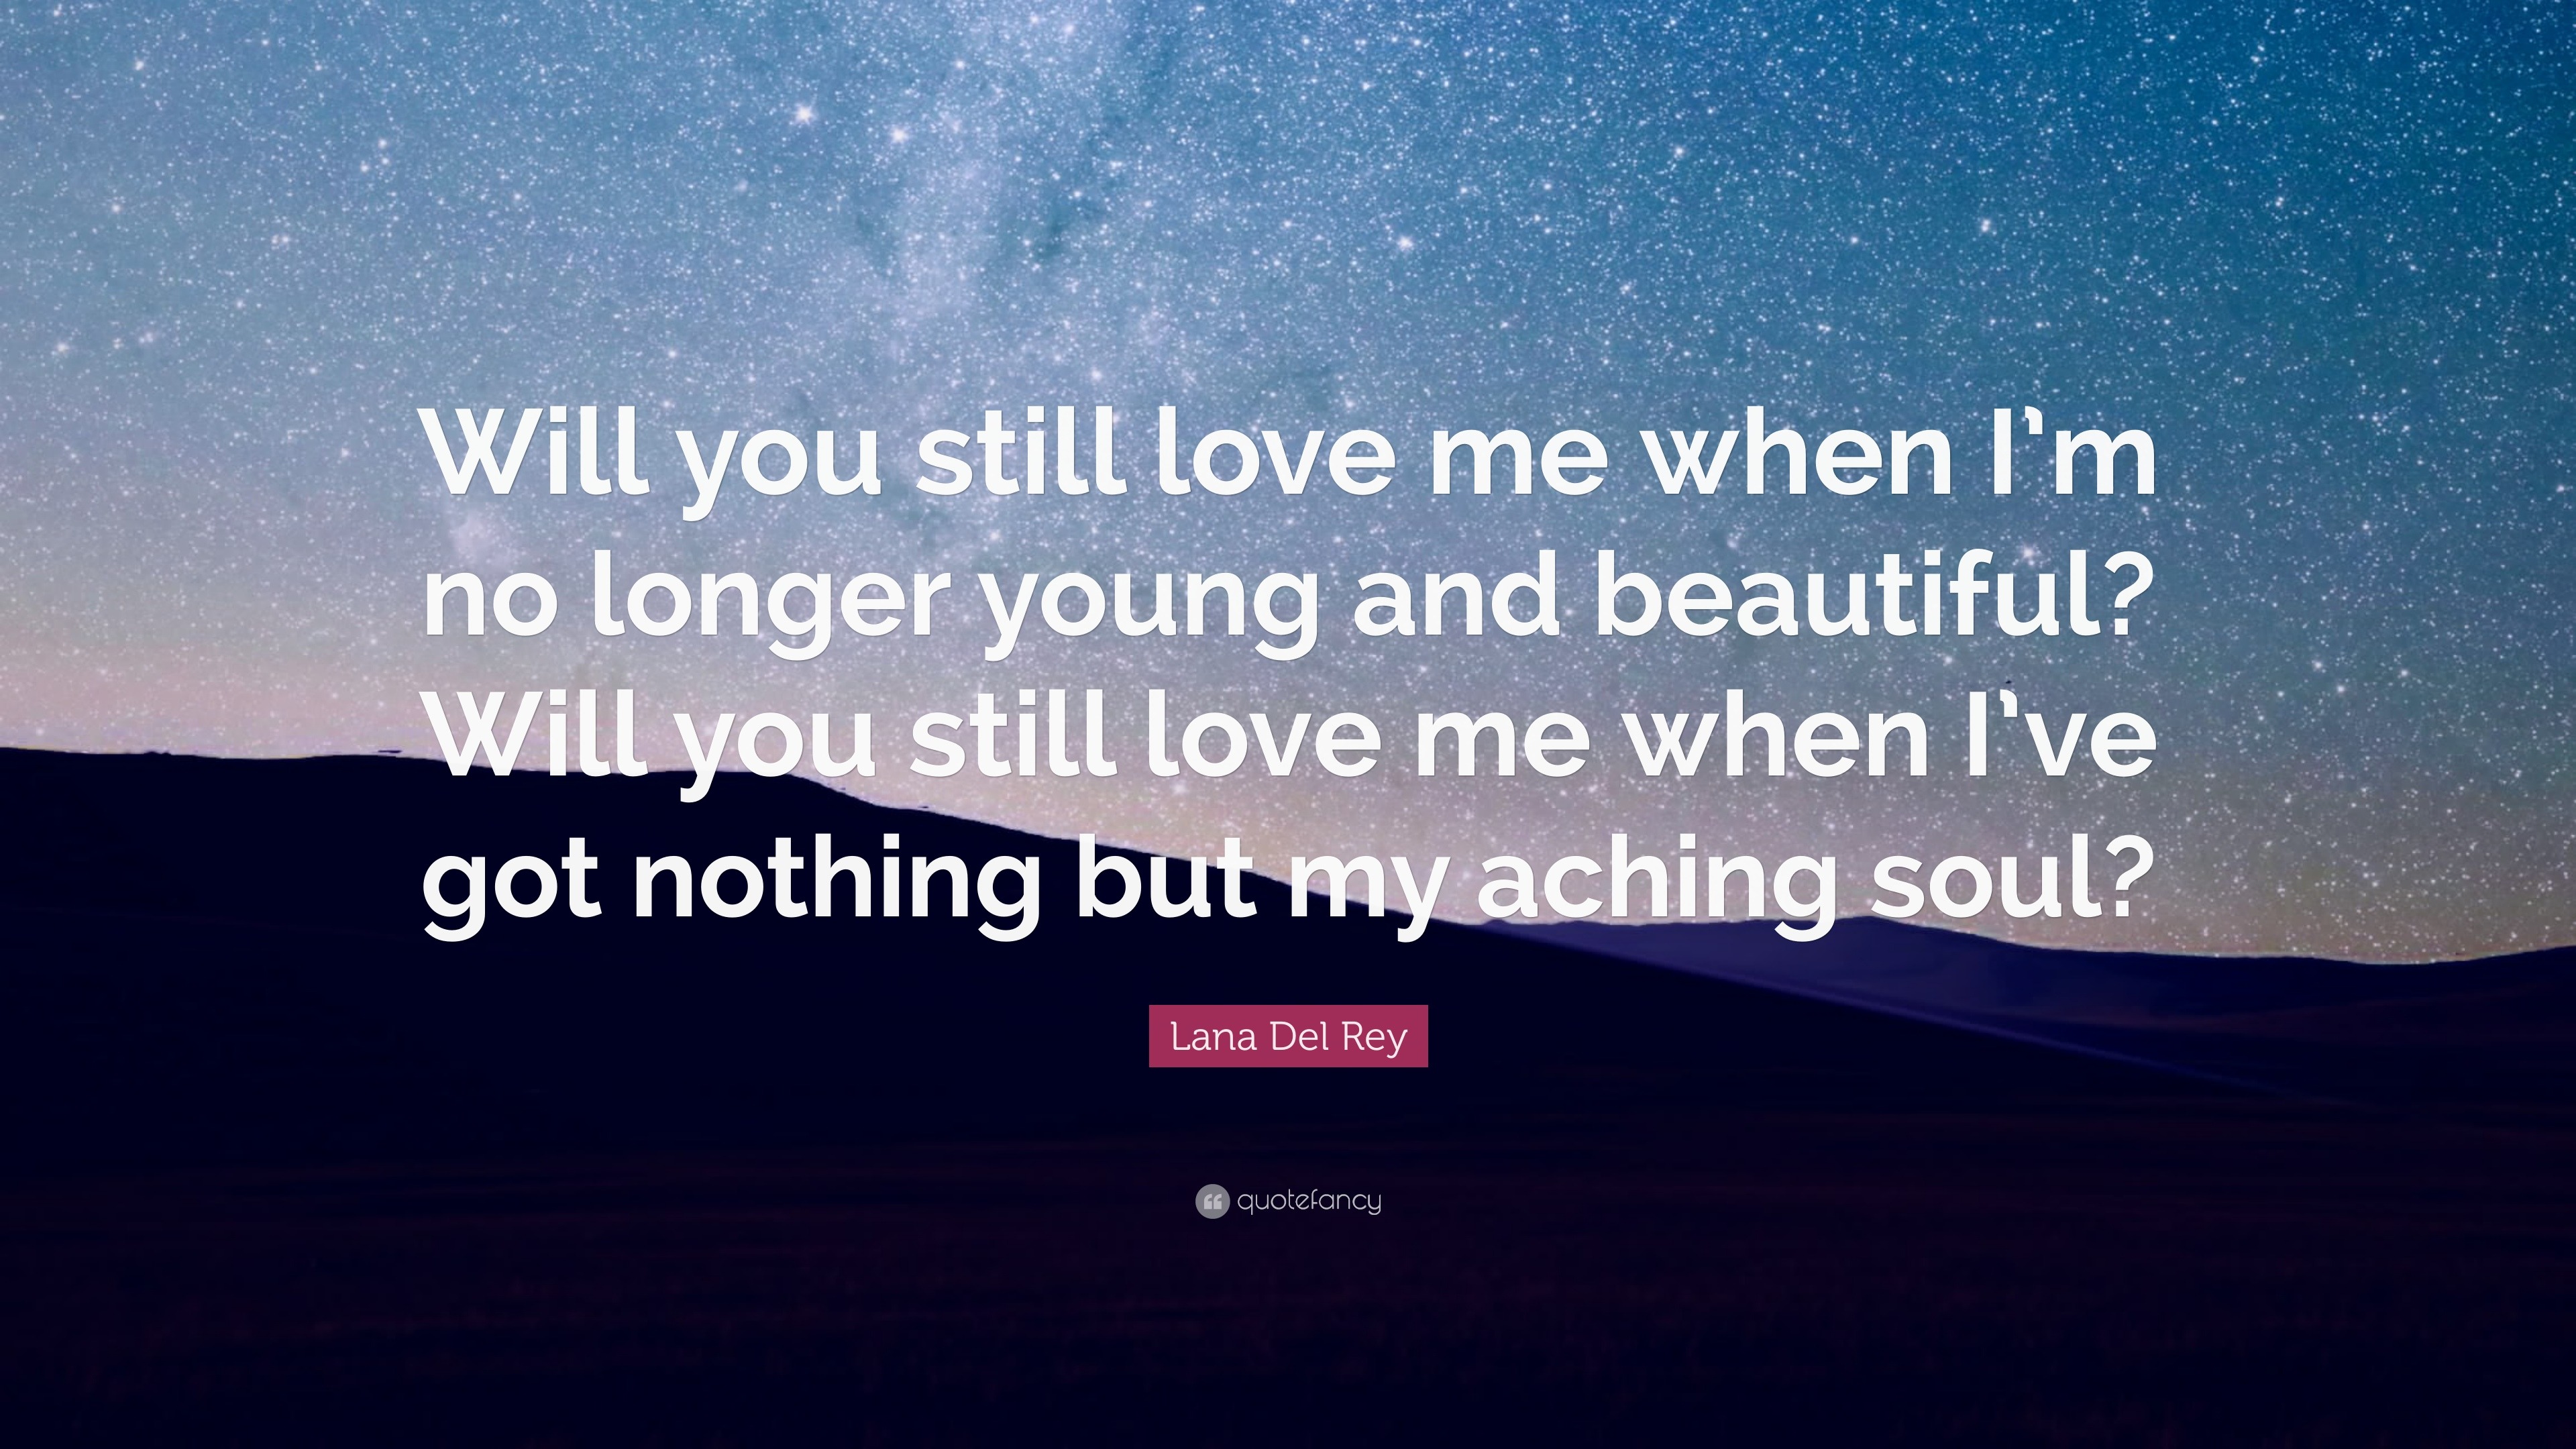 Lana Del Rey Quote “Will you still love me when I m no